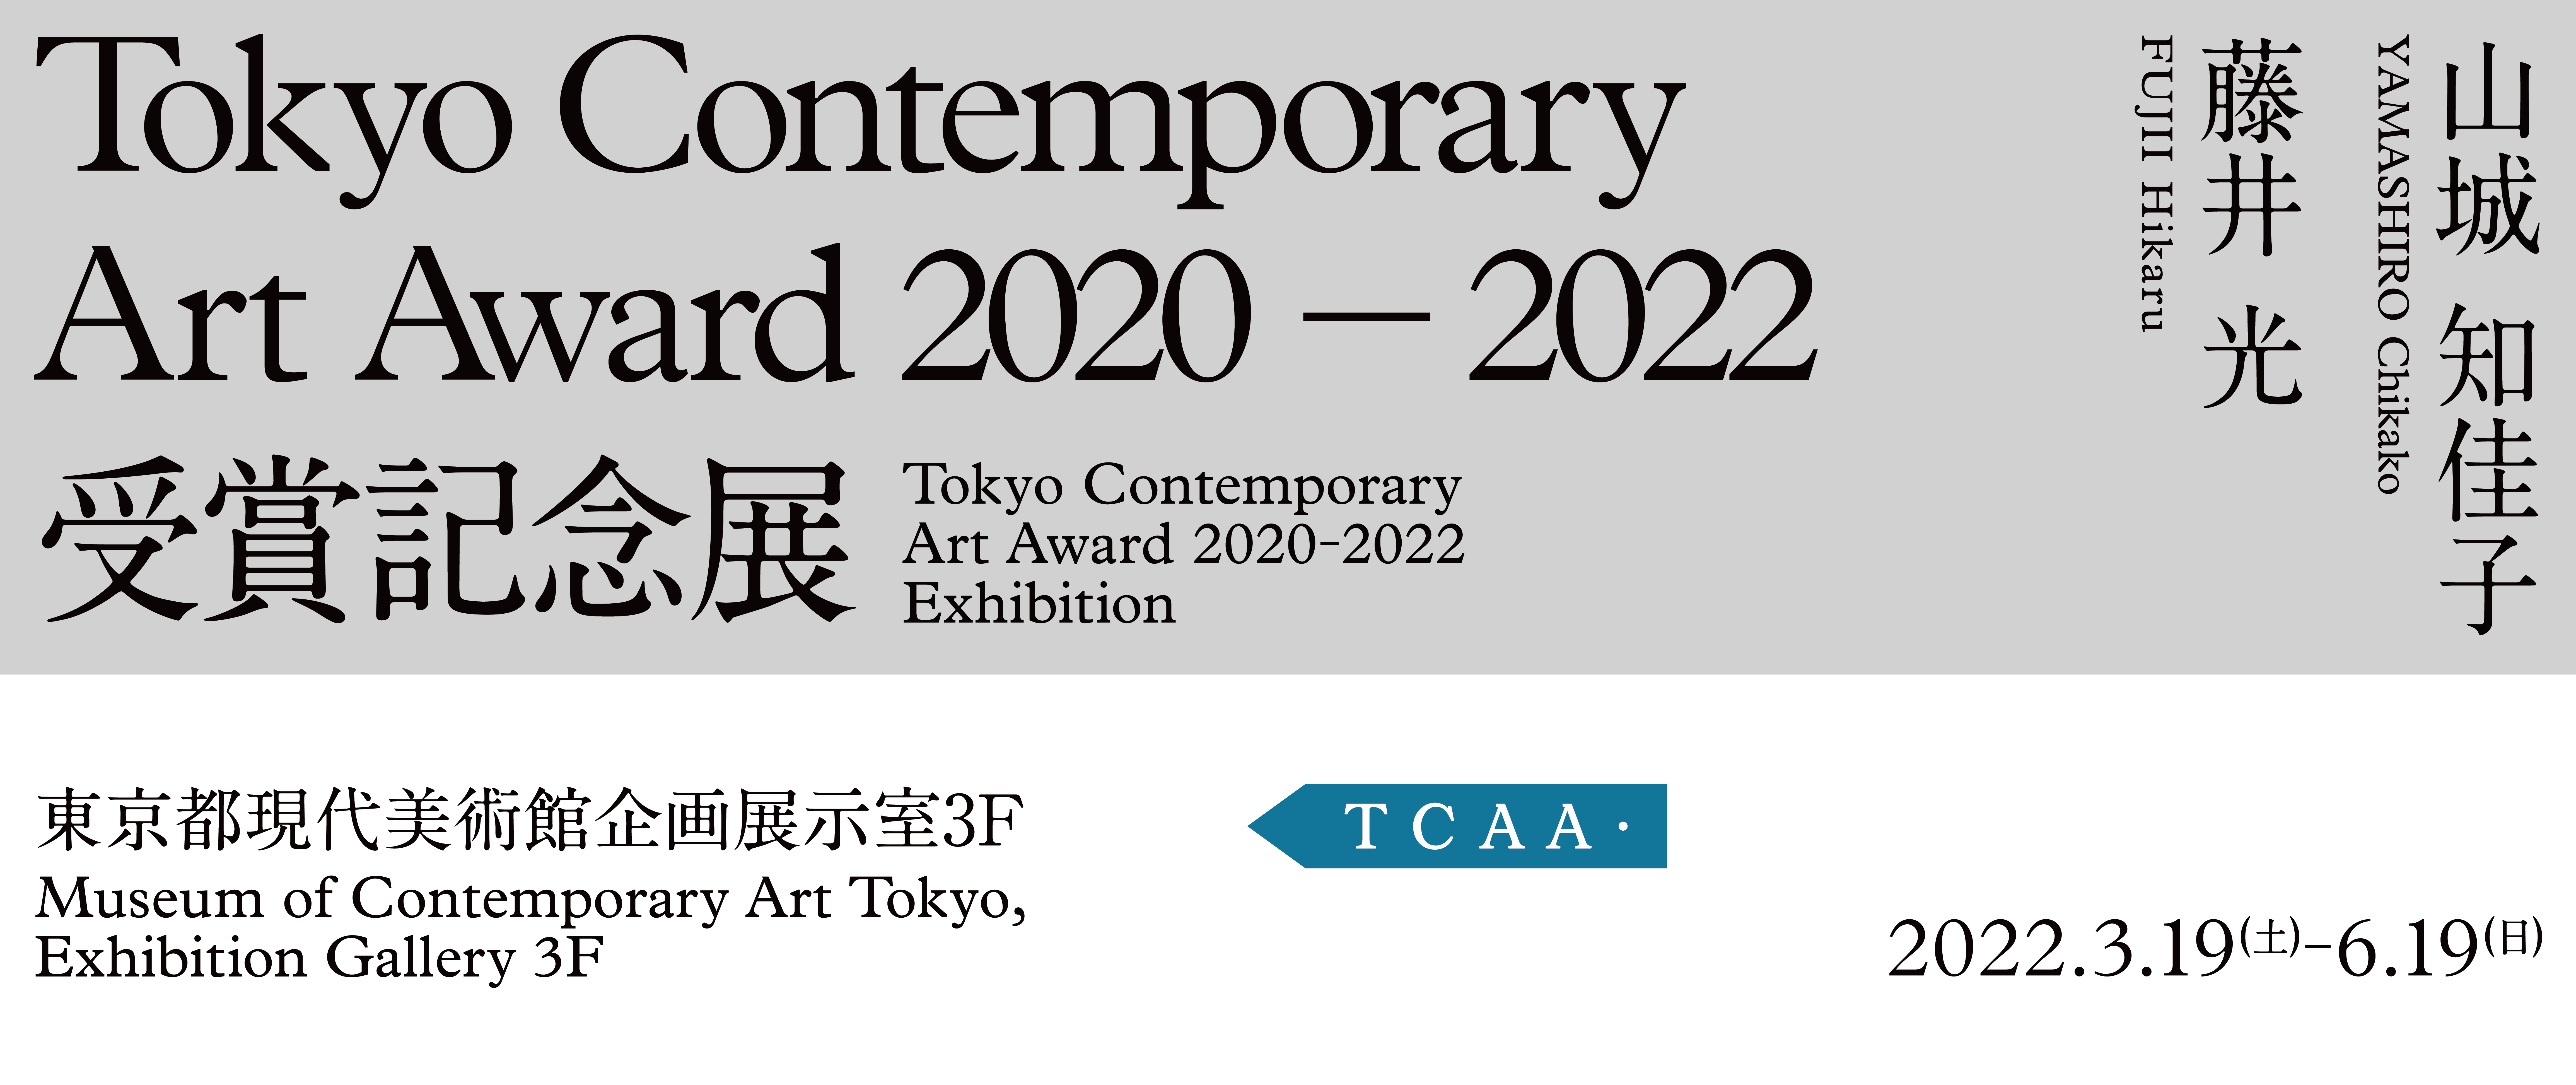 Tokyo Contemporary Art Award 2020-2022 Exhibition